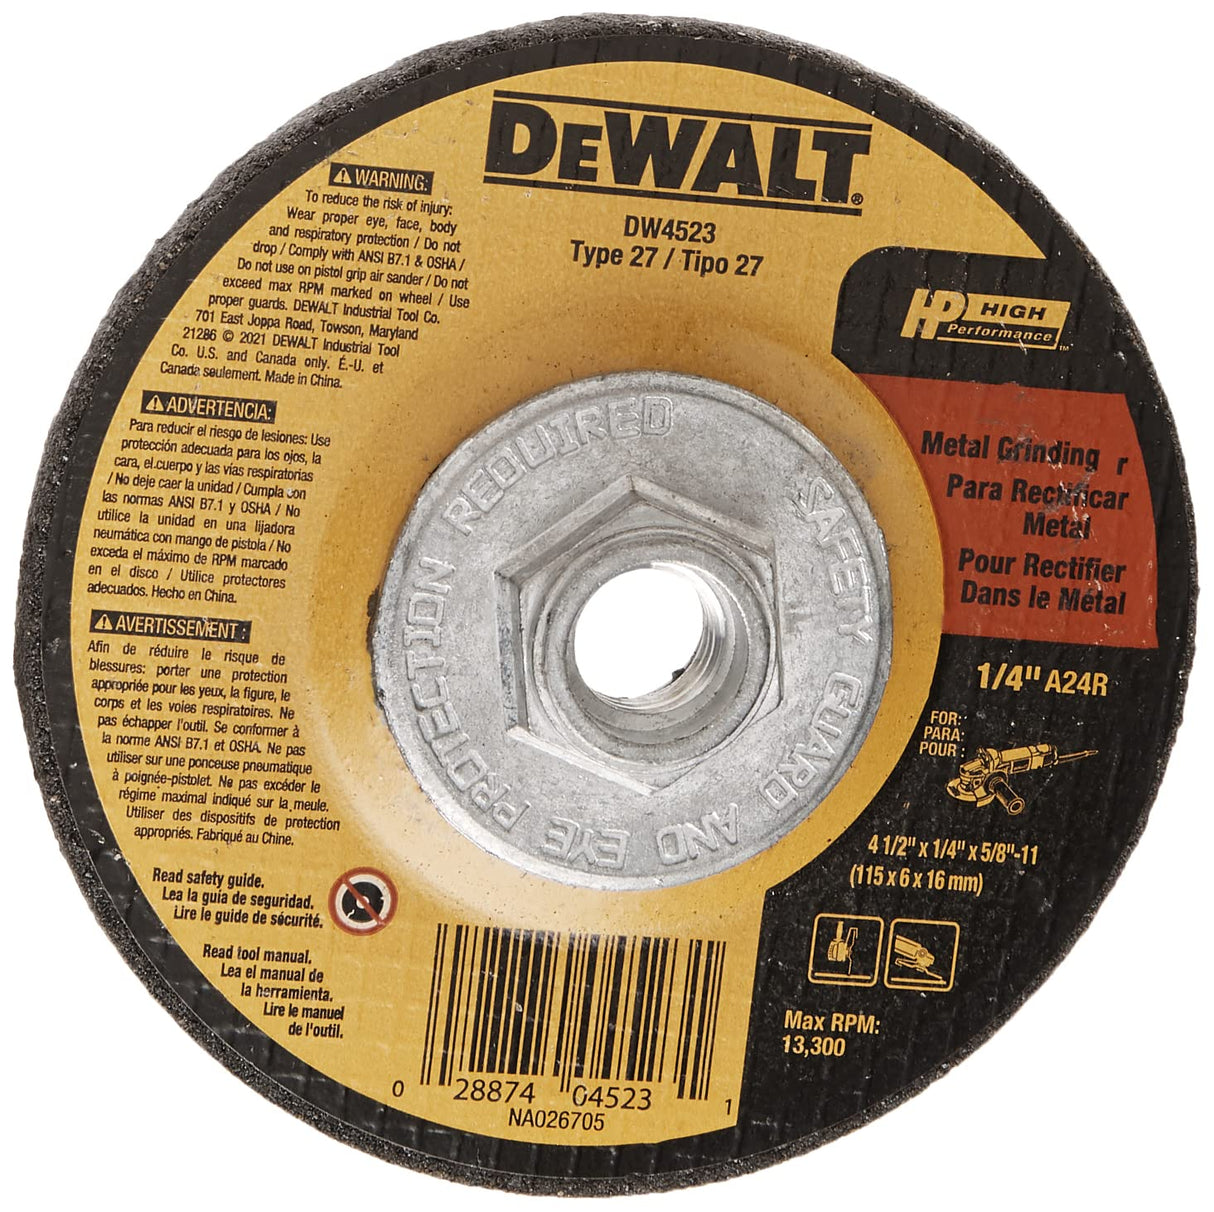 DeWalt 4.5" Grinding Wheel General Purpose (DW4523)